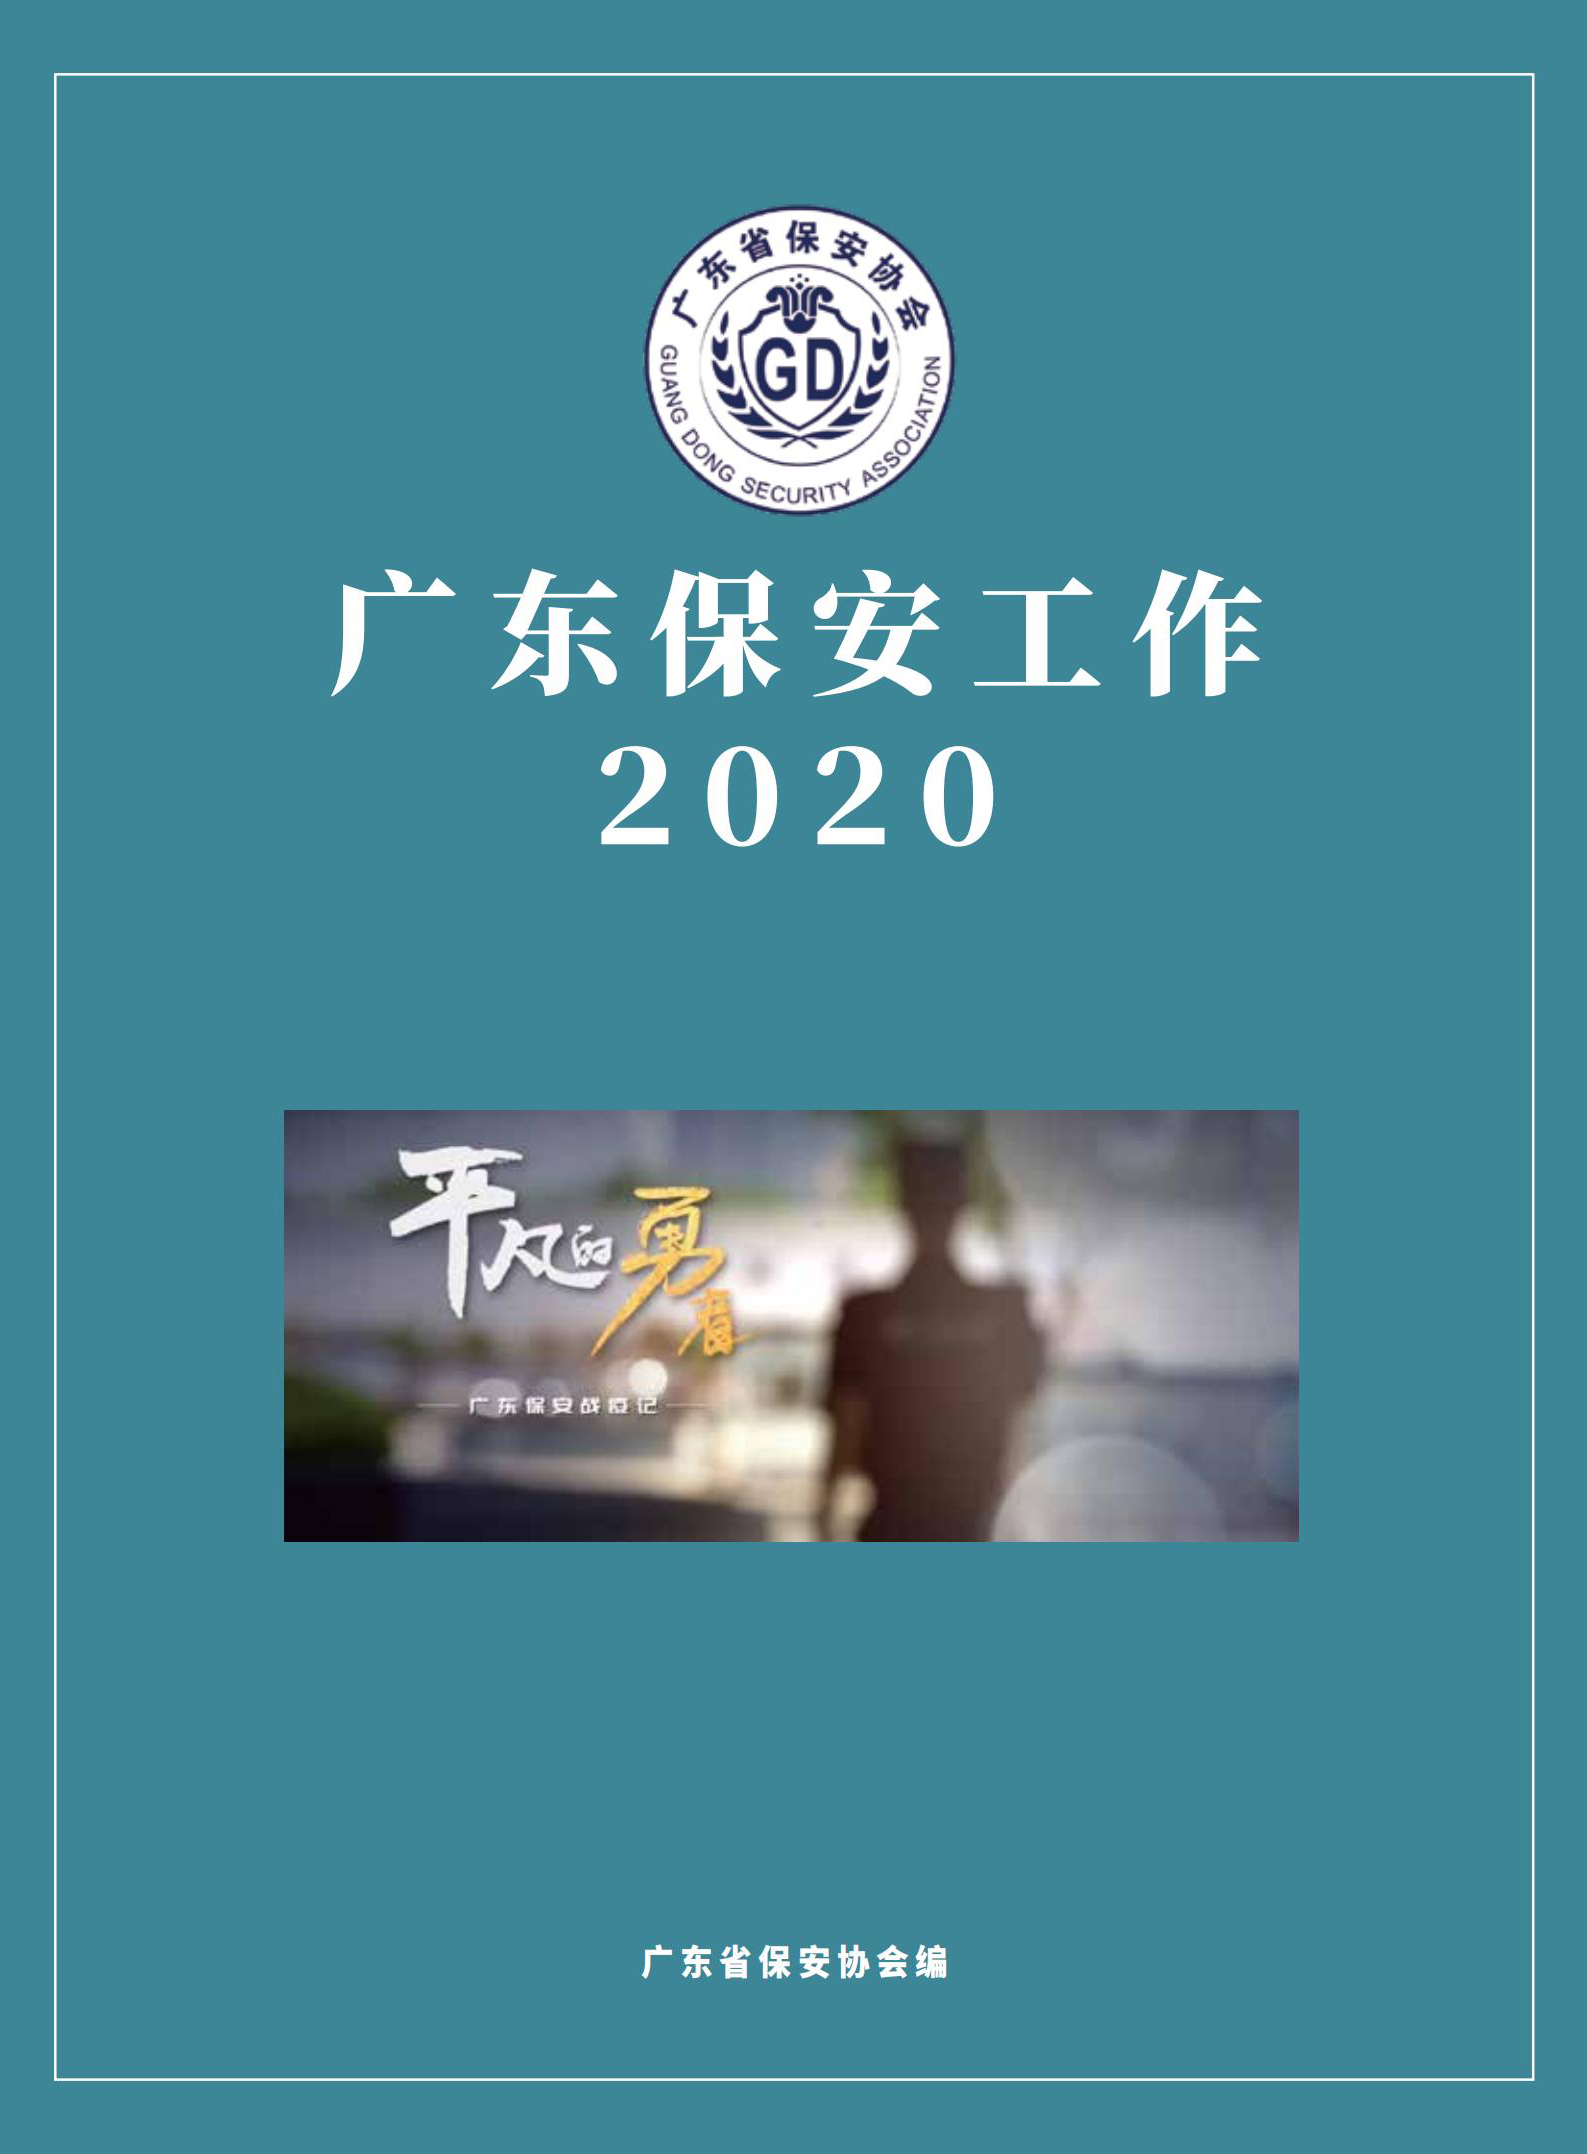 广东保安工作2020